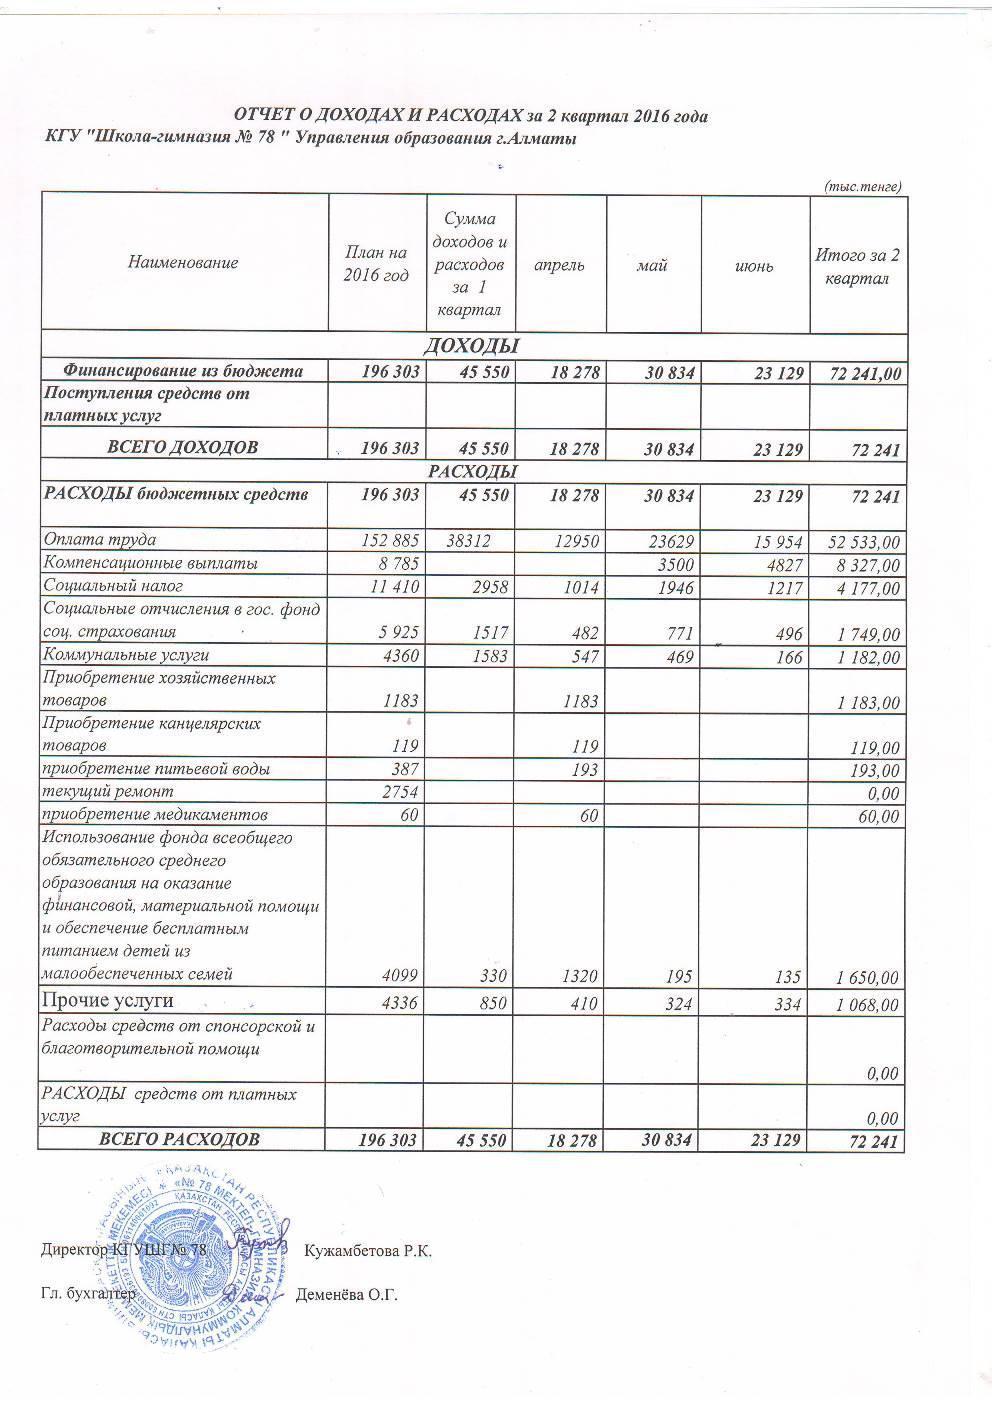 Отчет о доходах  и расходах за 2 квартал 2016 и пояснительная записка к отчету